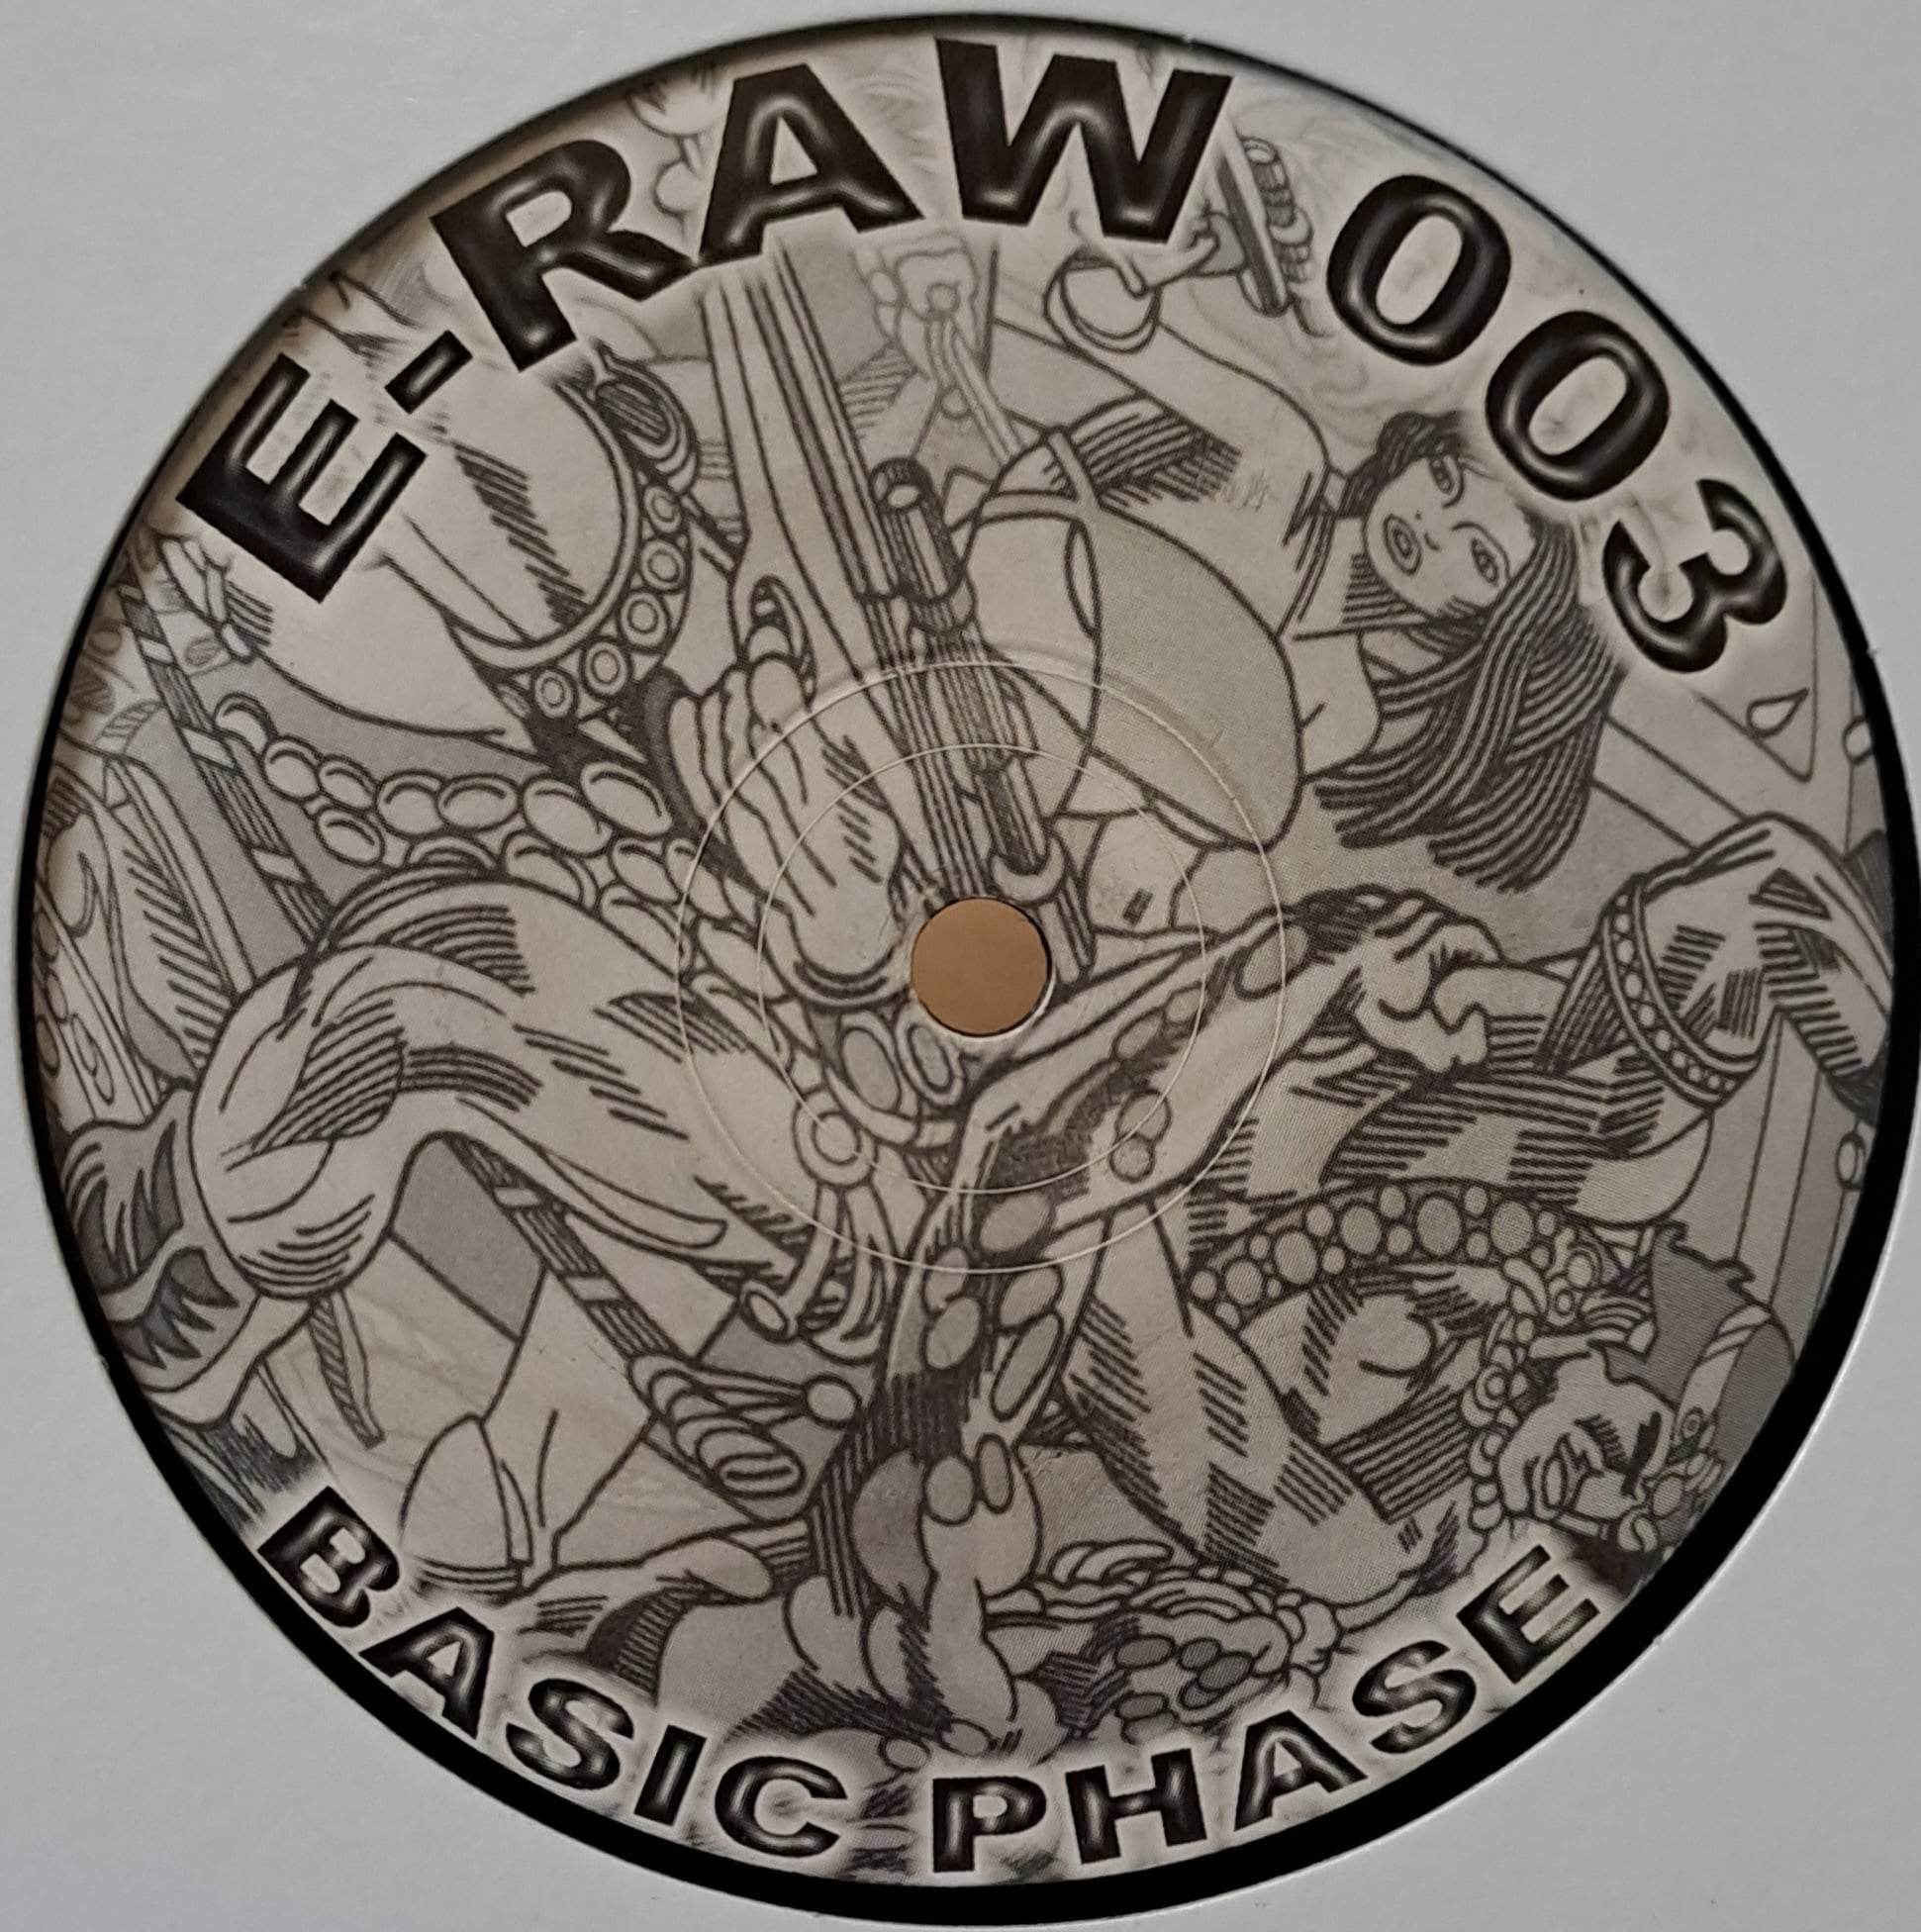 E-Raw 03 - vinyle freetekno